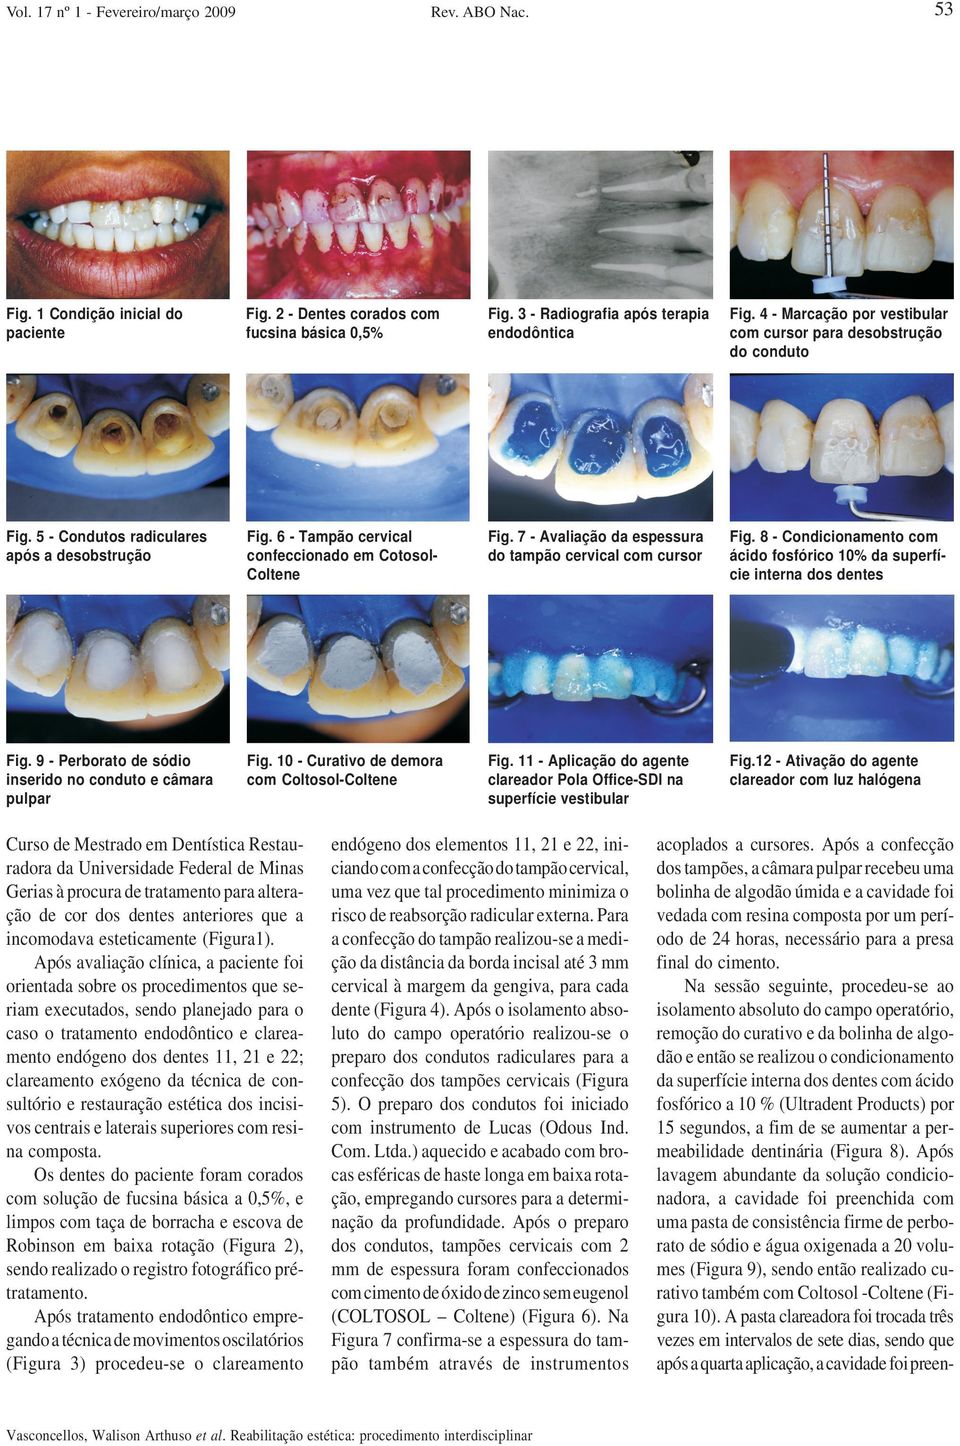 7 - Avaliação da espessura do tampão cervical com cursor Fig. 8 - Condicionamento com ácido fosfórico 10% da superfície interna dos dentes Fig.